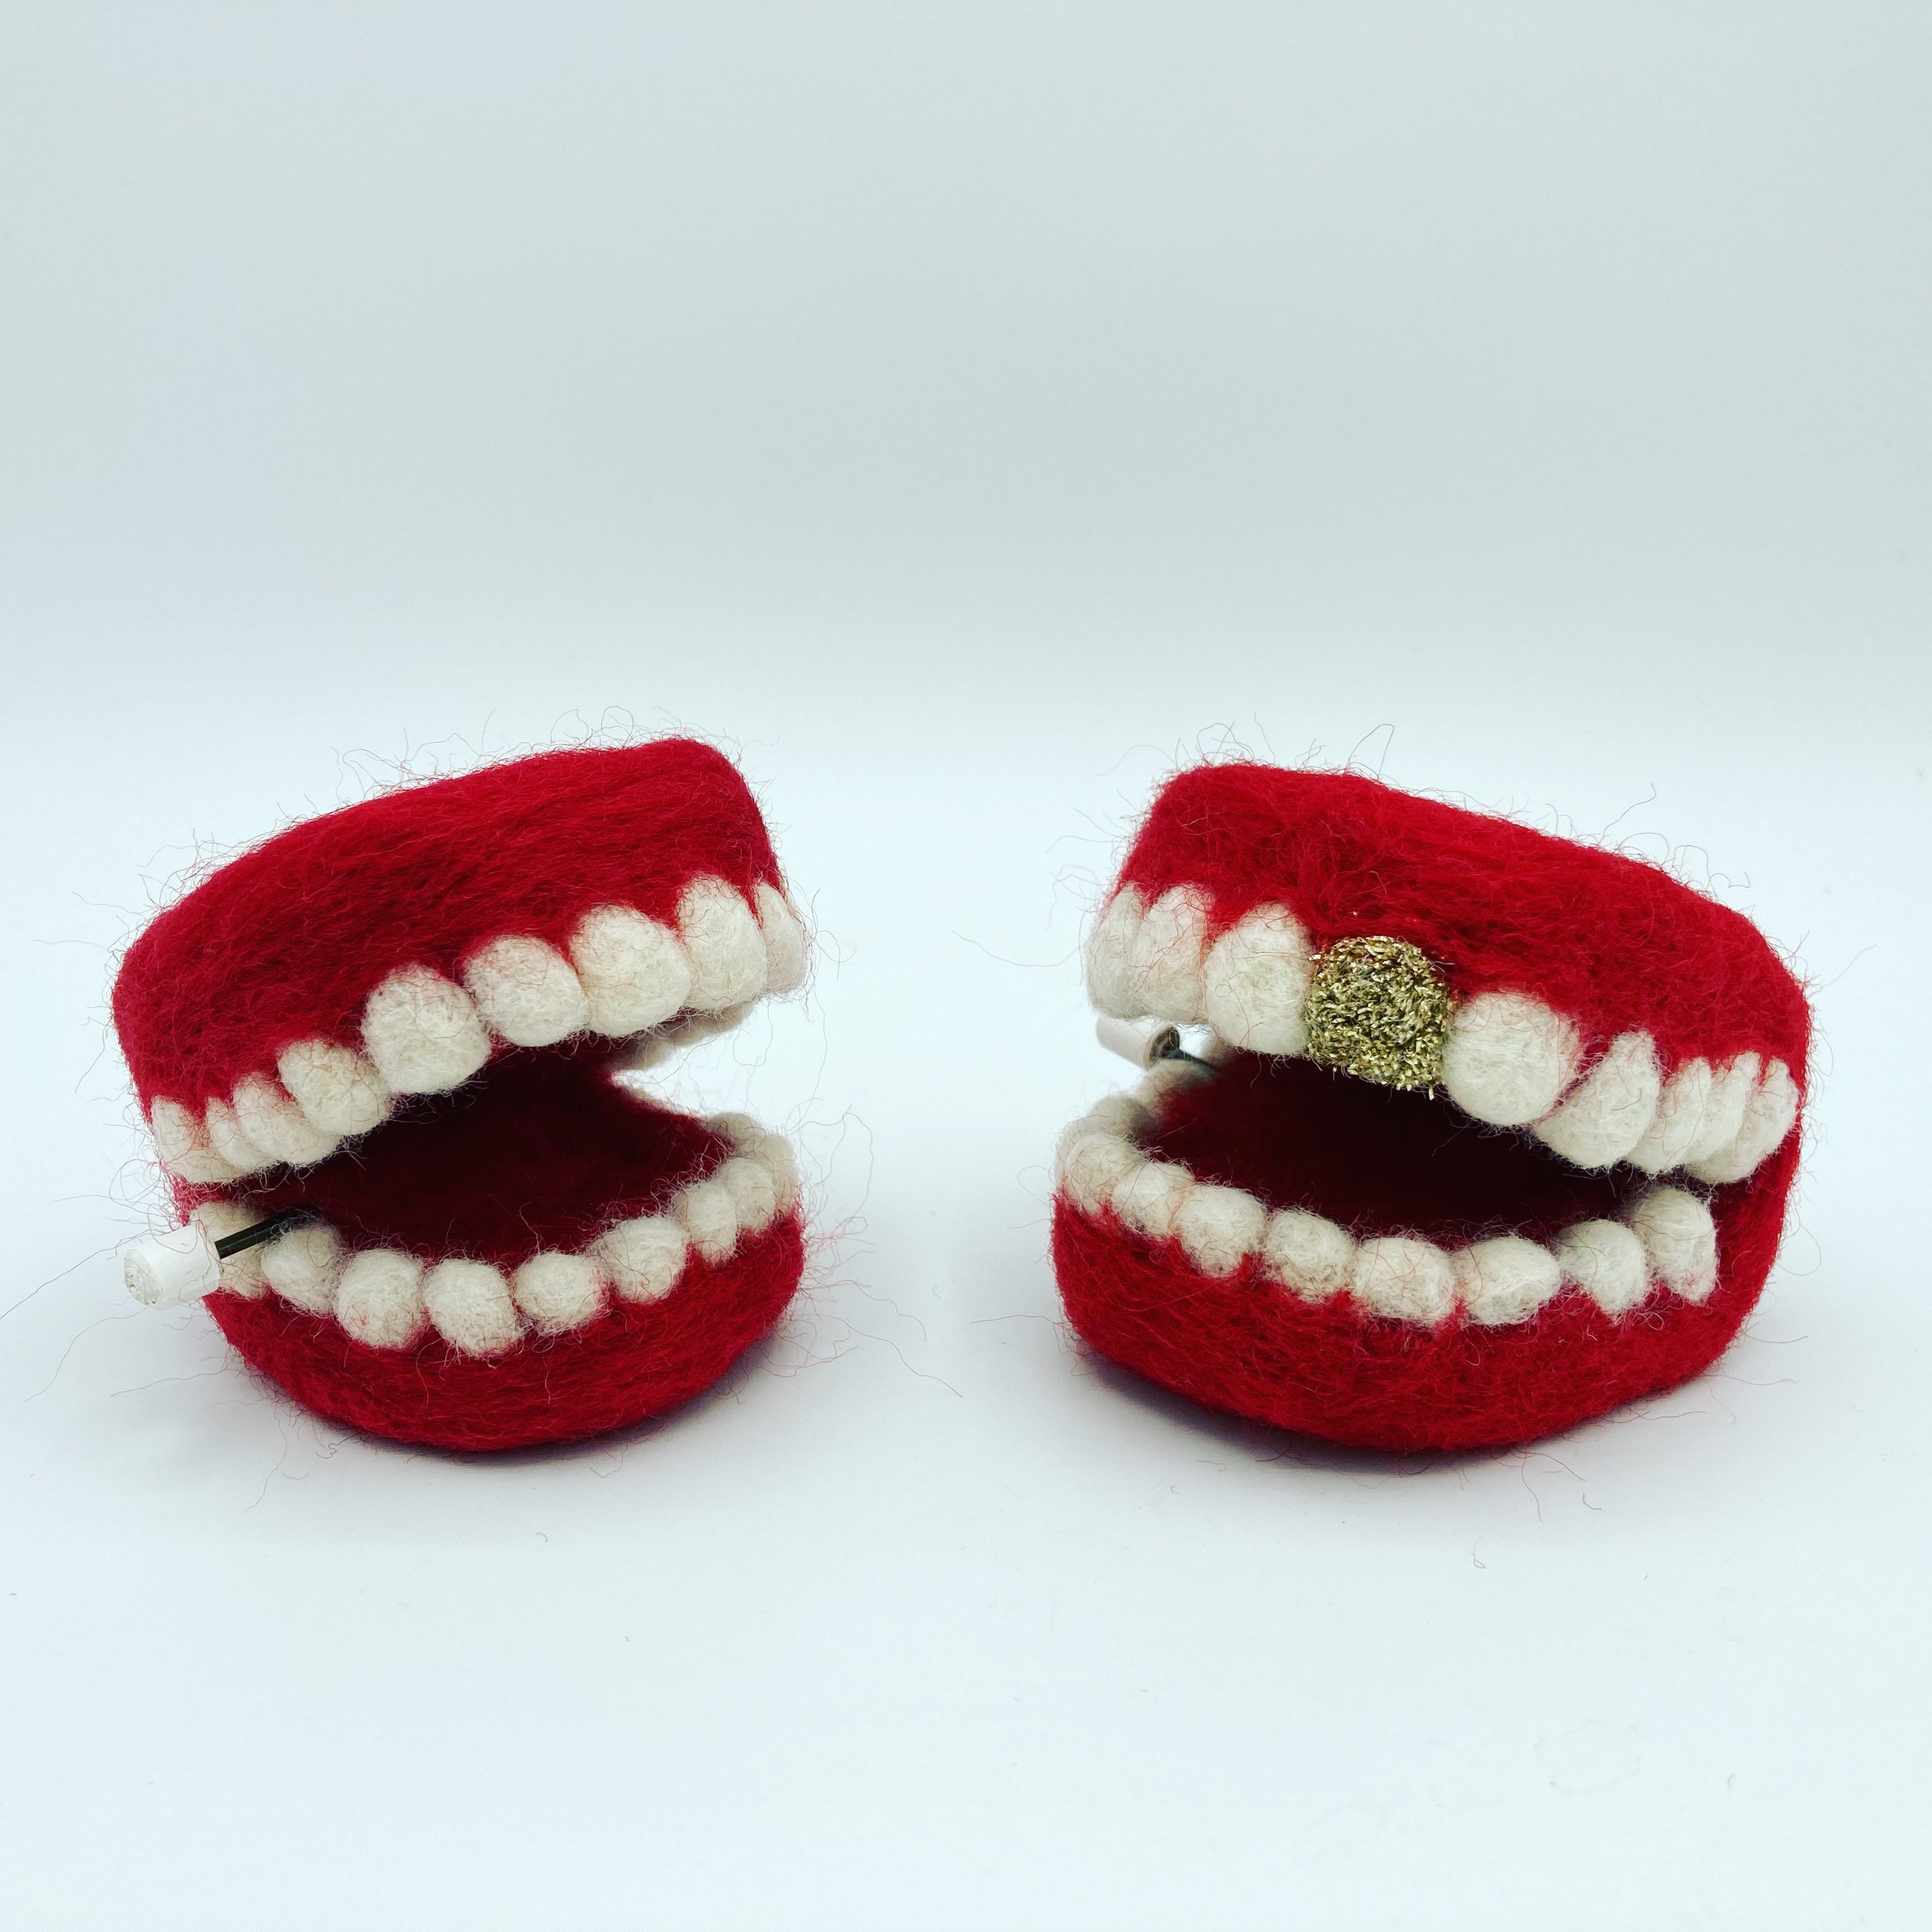 chattering teeth pair.JPG